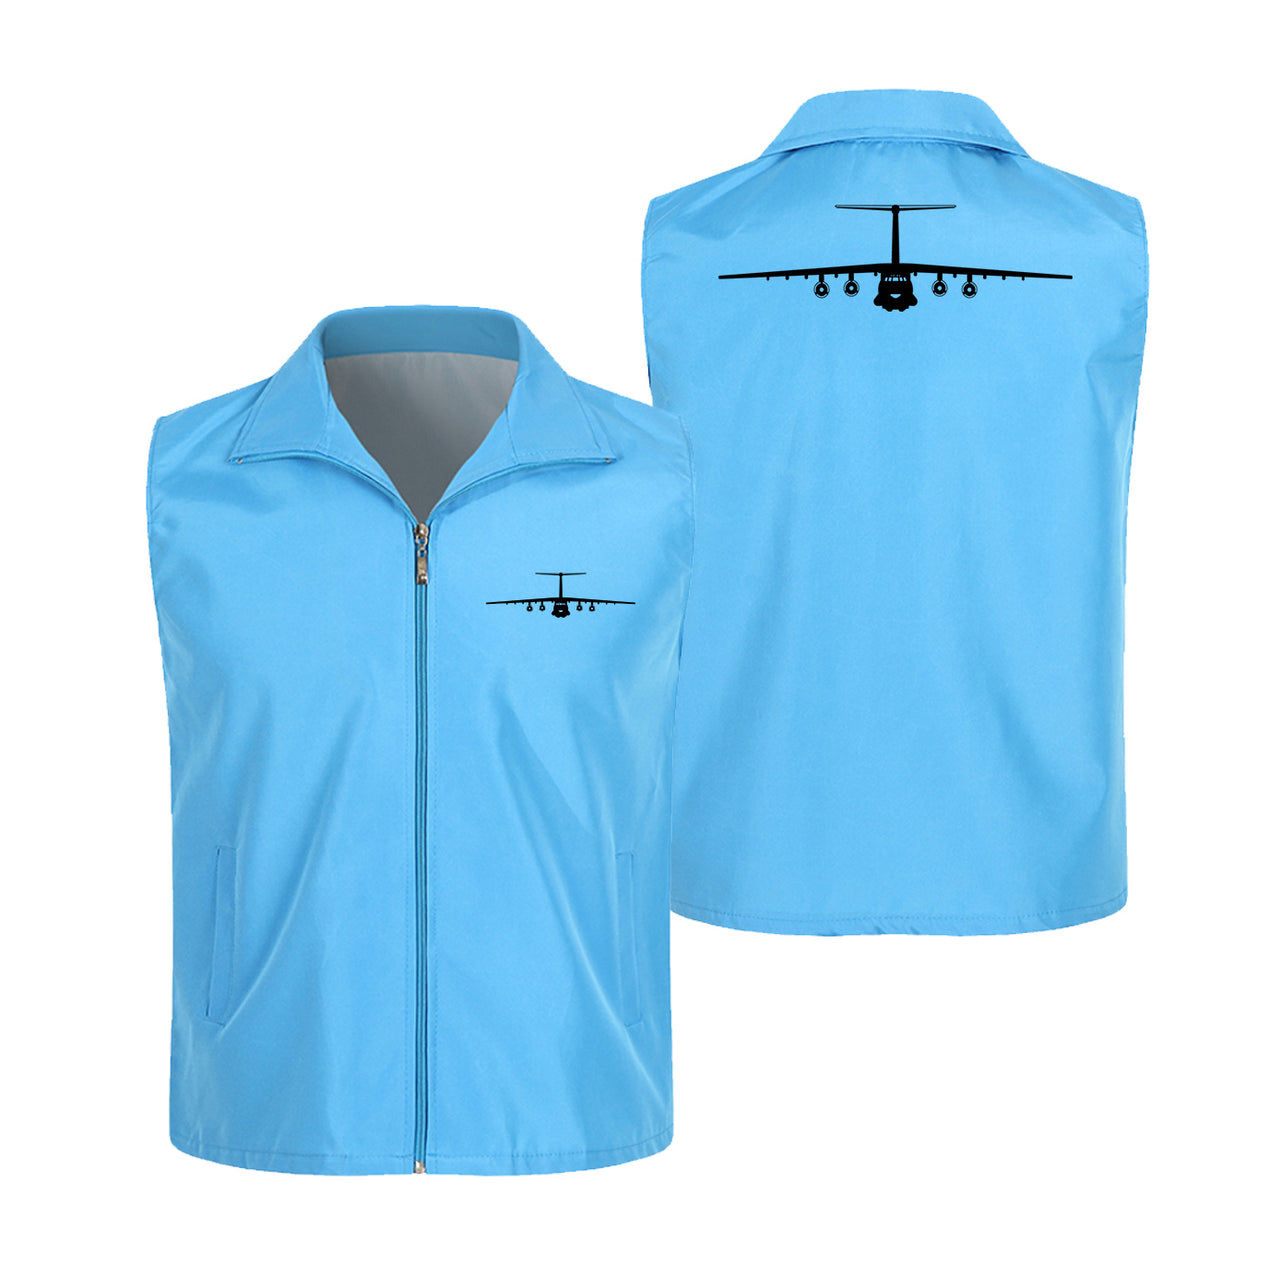 Ilyushin IL-76 Silhouette Designed Thin Style Vests